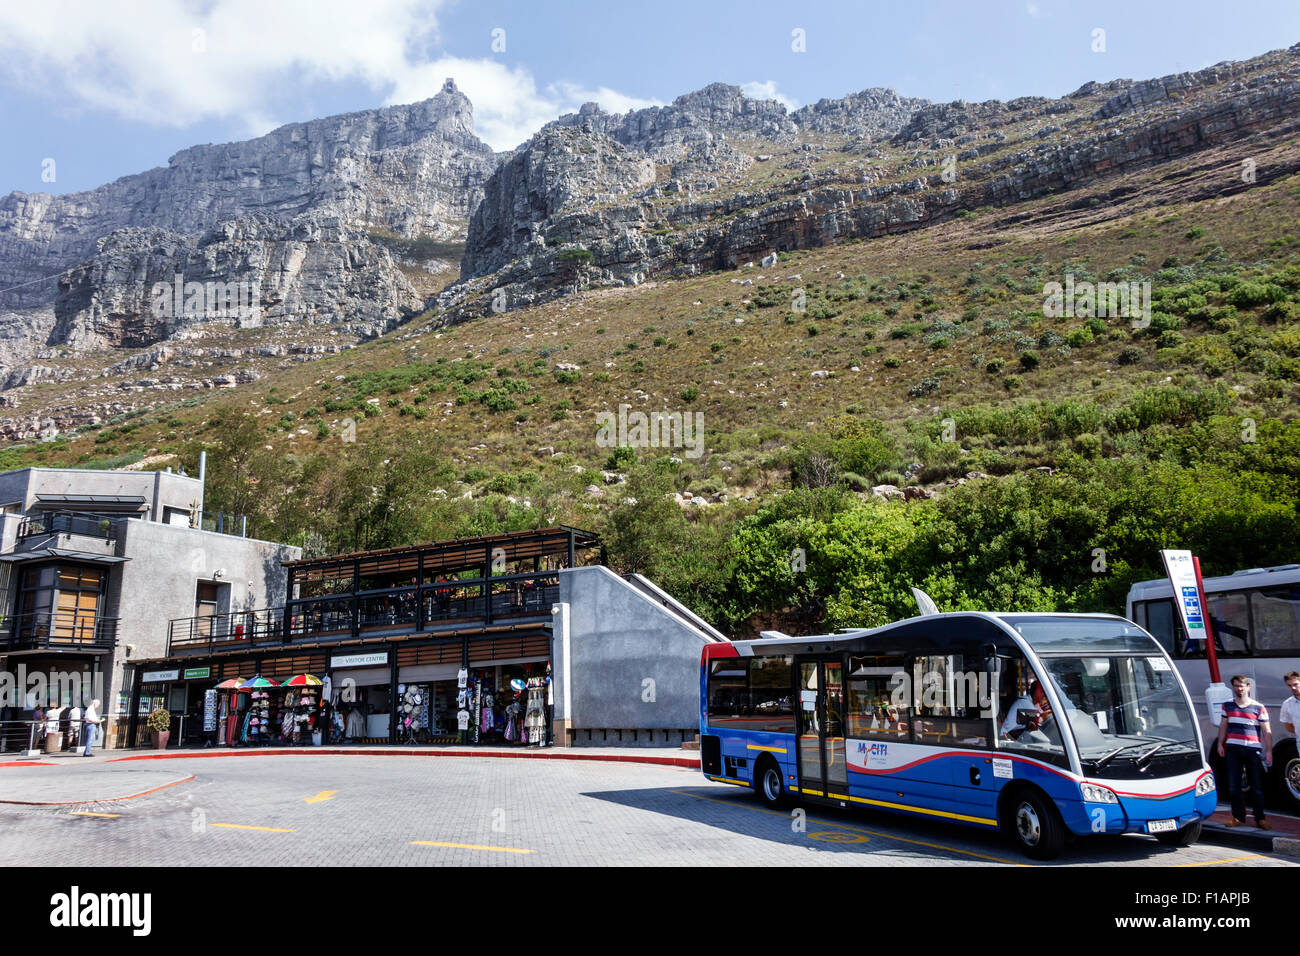 Cape Town Afrique du Sud, parc national de Table Mountain, chemin Tafelberg, téléphérique tramway, station inférieure supérieure, arrêt de bus MyCiTi, service de navette Banque D'Images